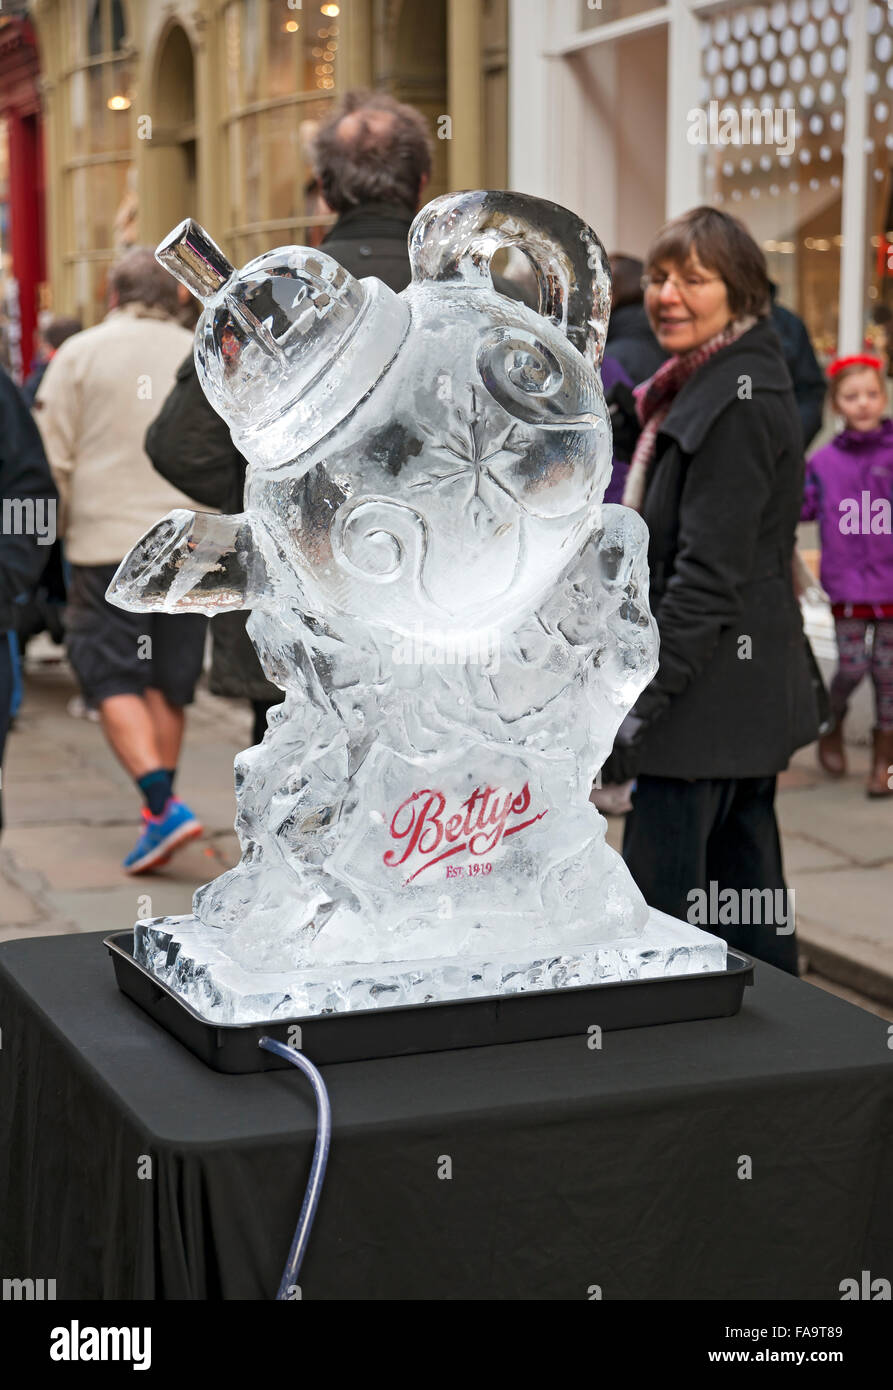 Sculpture sur glace d'une théière géante sur la Ice Trail en hiver York North Yorkshire Angleterre Royaume-Uni Grande-Bretagne Banque D'Images